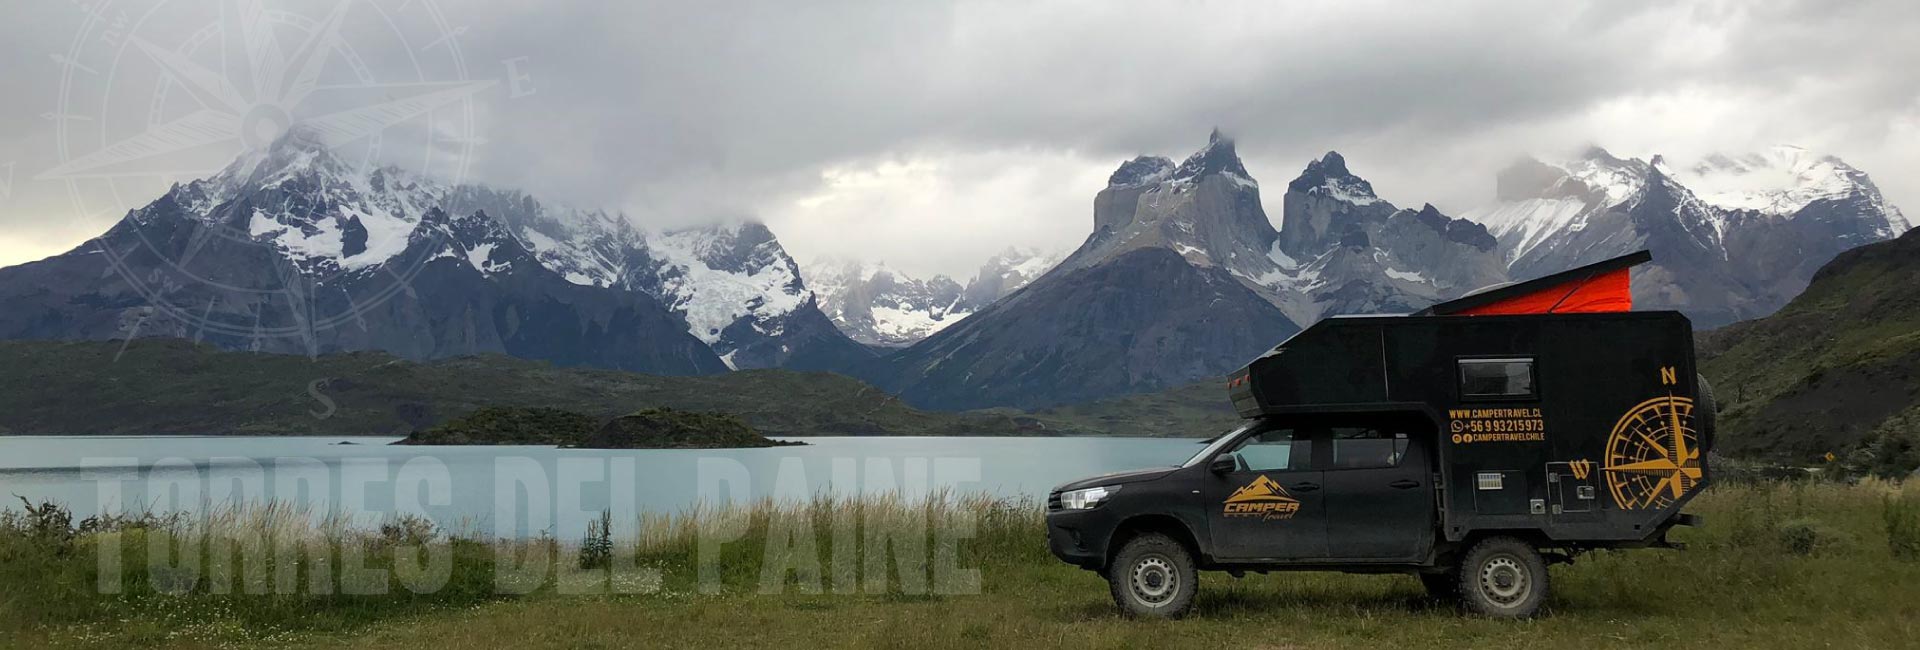 patagonia chilena chilean carretera austral campertravel camper rent camper travel chile